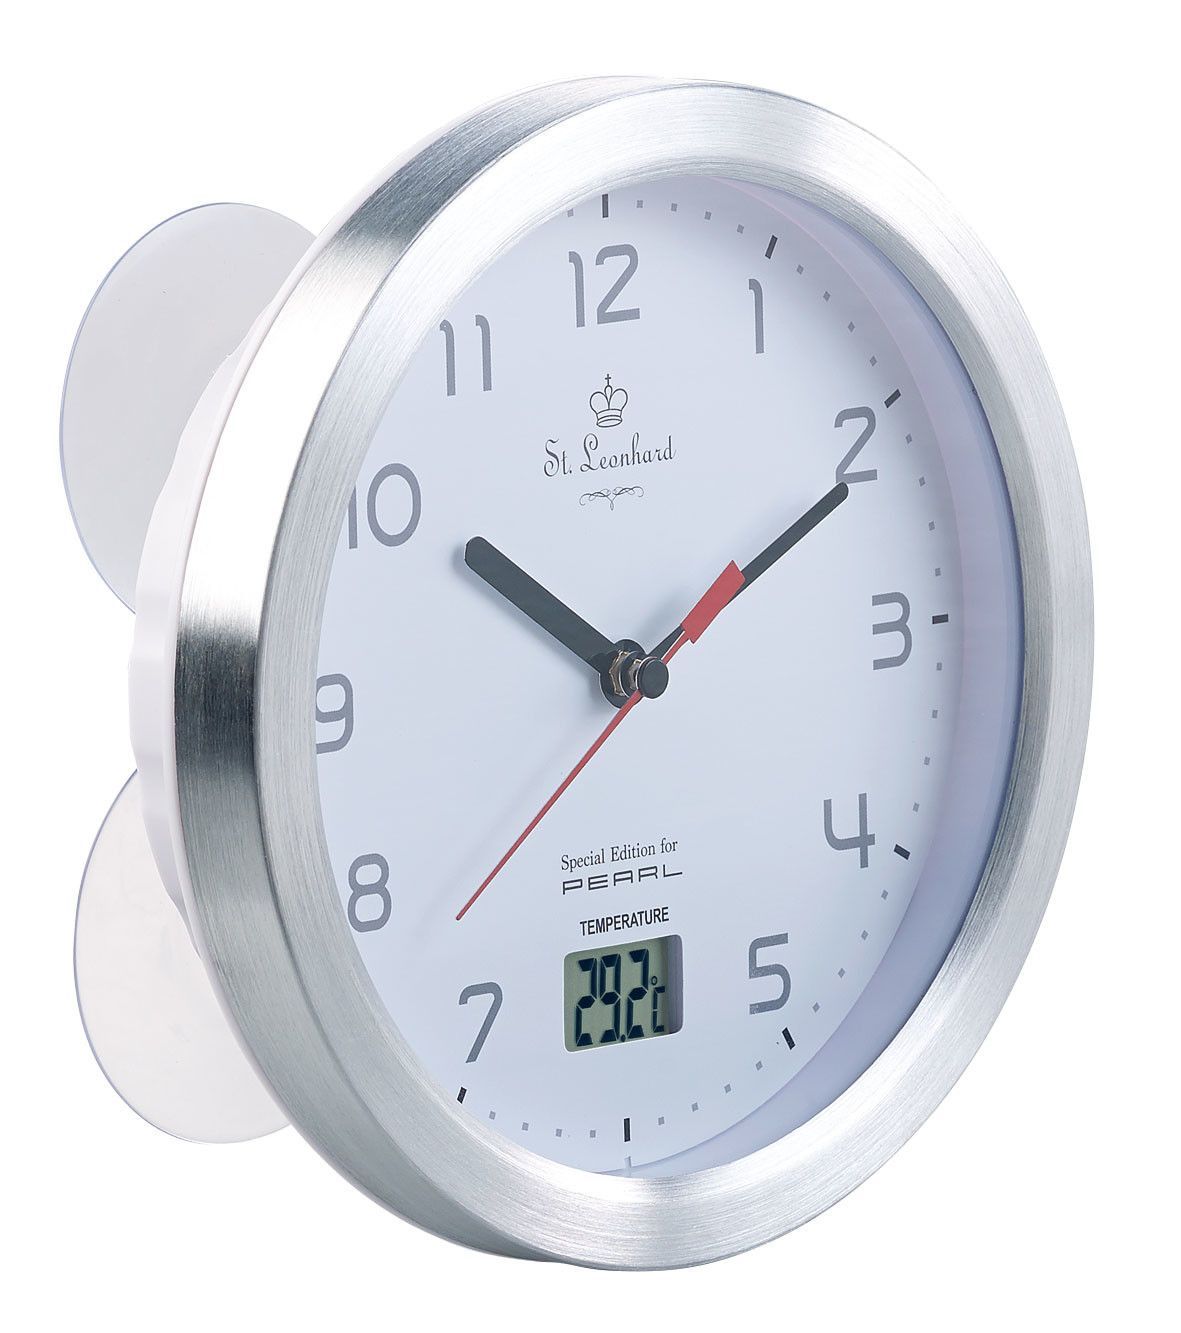 Horloge LCD / Timer / Thermomètre / Hygromètre - Etanche IP54 - Fixation  murale / Béquille / Ventouse